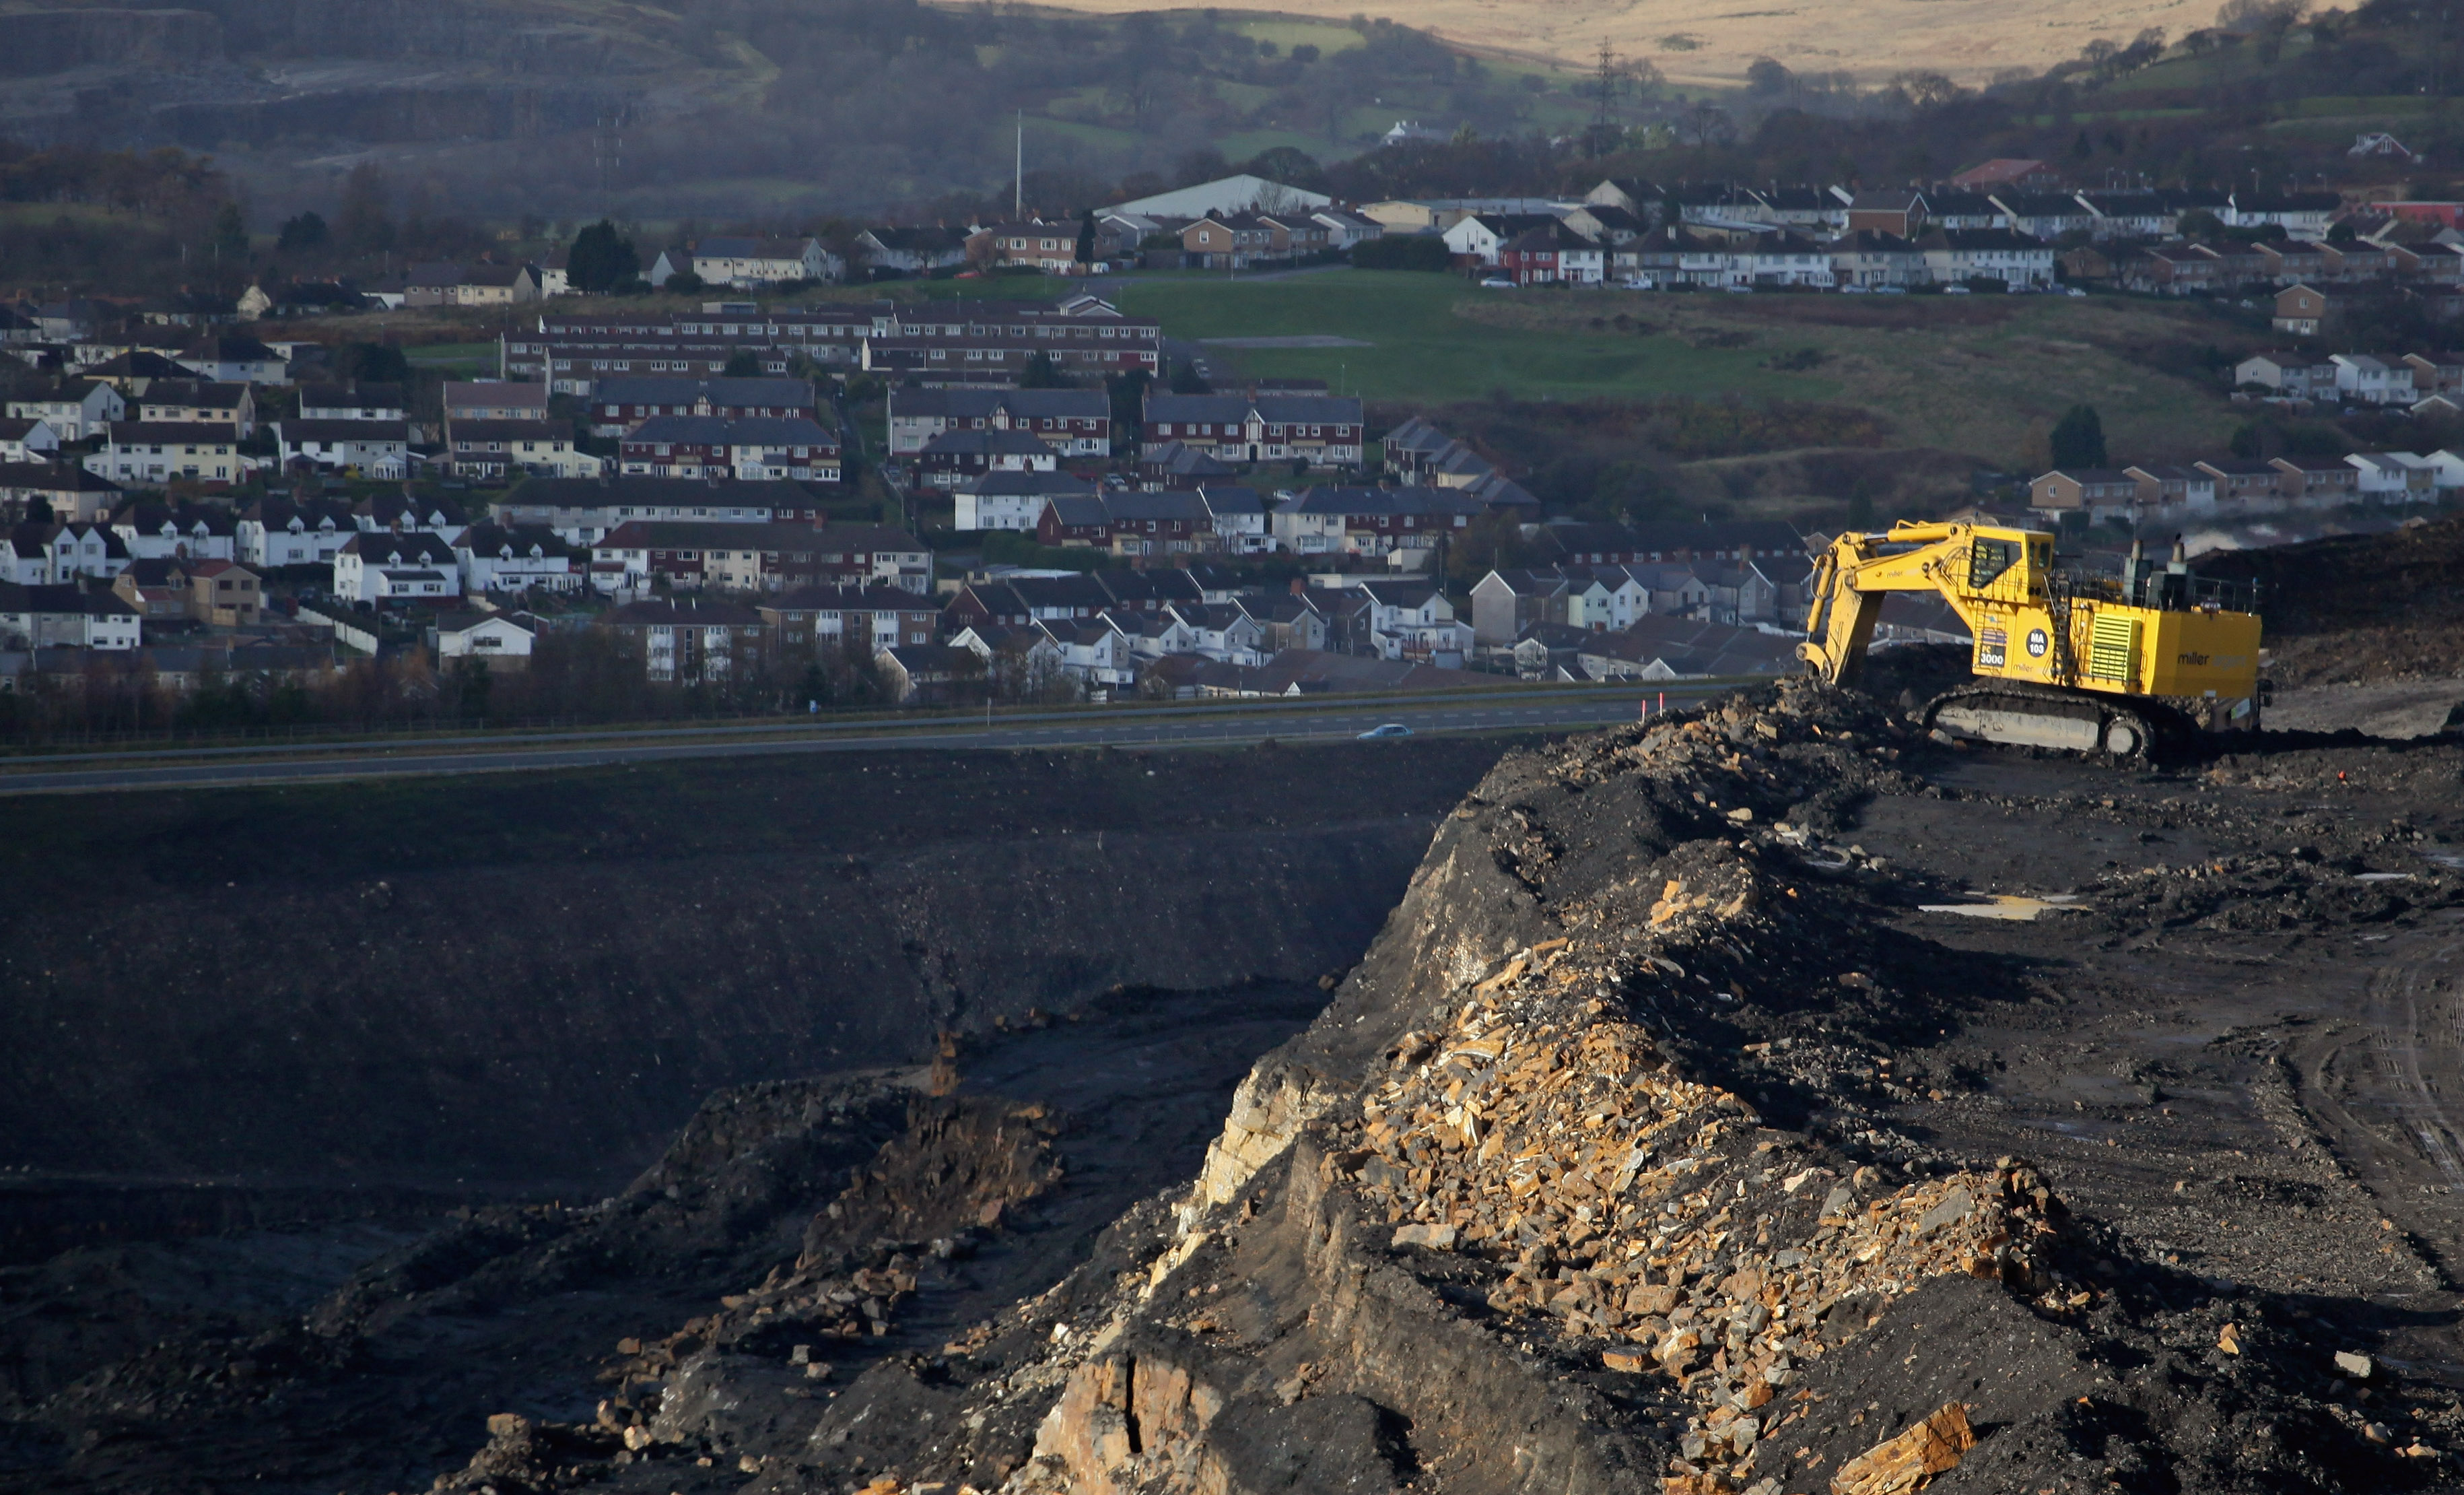 Merthyr Tydfil, Wales (Matt Cardy/Getty Images)